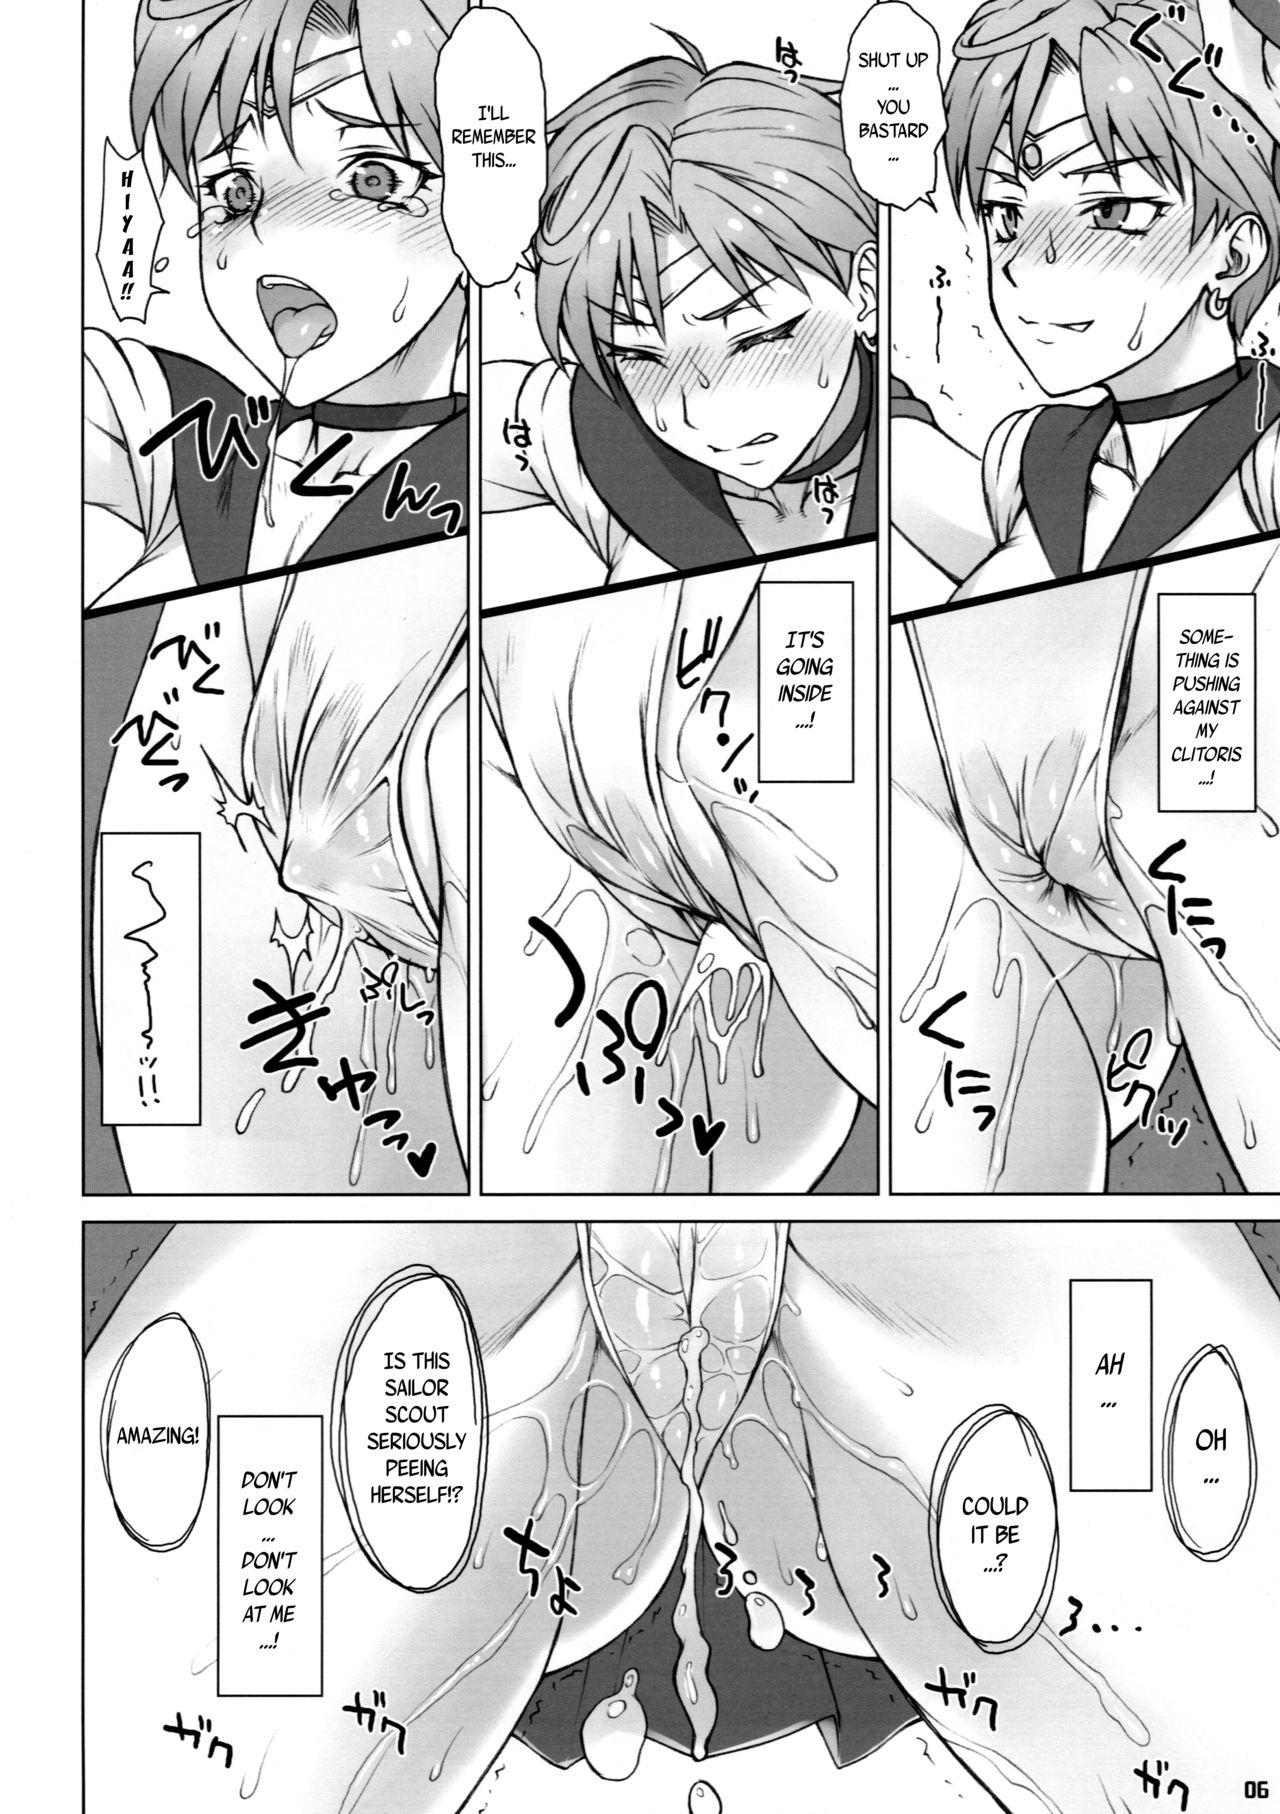 Boyfriend Uranus-san vs Toumei Ningen - Sailor moon Exhibitionist - Page 5